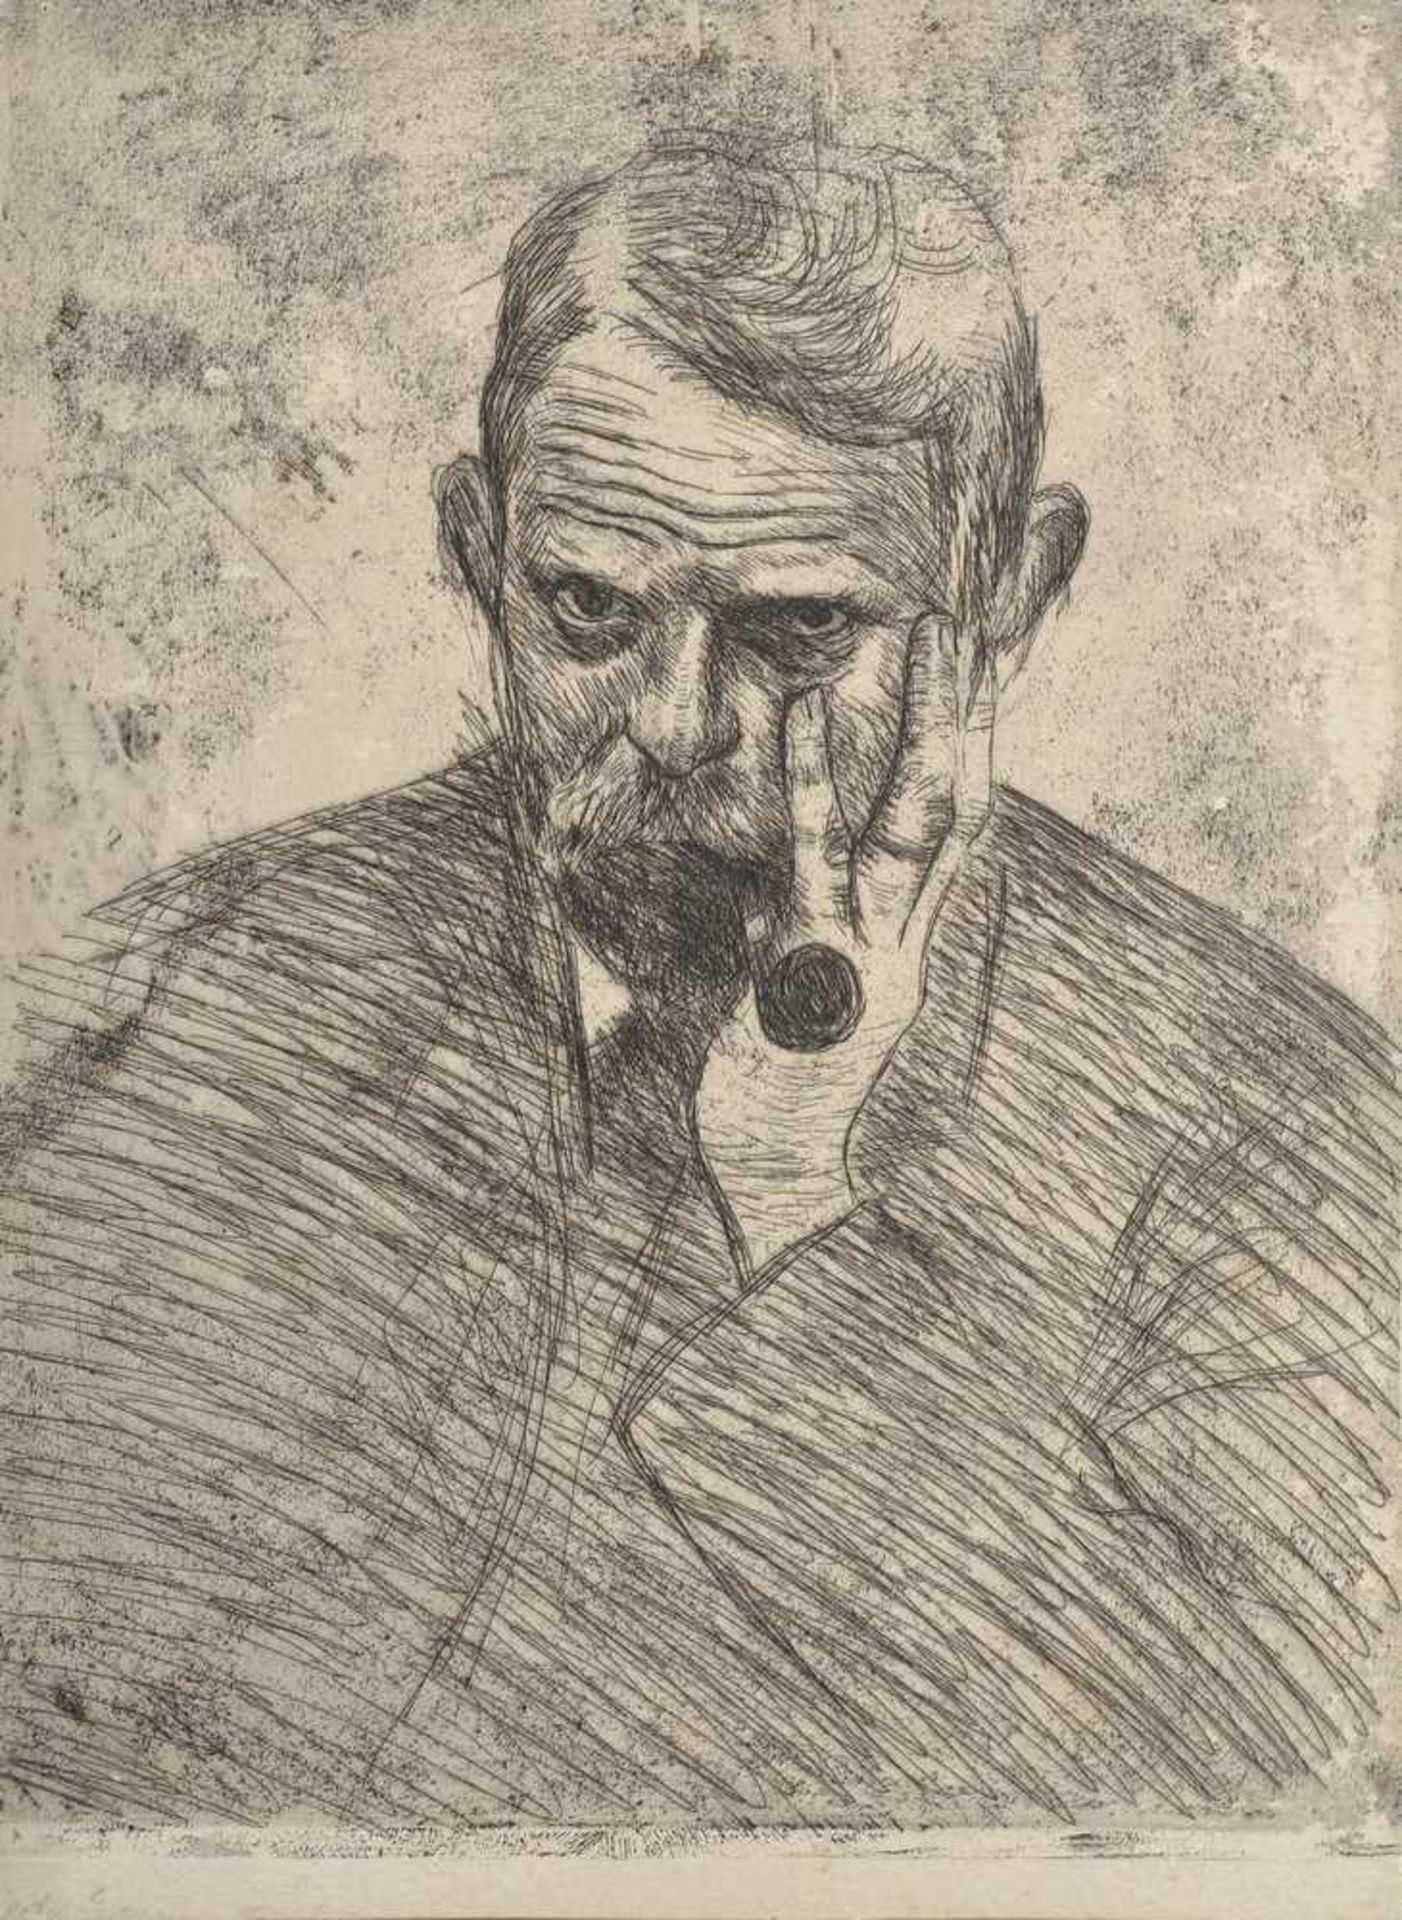 Schaper, Friedrich (1869-1956) "Selbstportrait mit Pfeife", Radierung, 30,5x22,5cm, unsign./